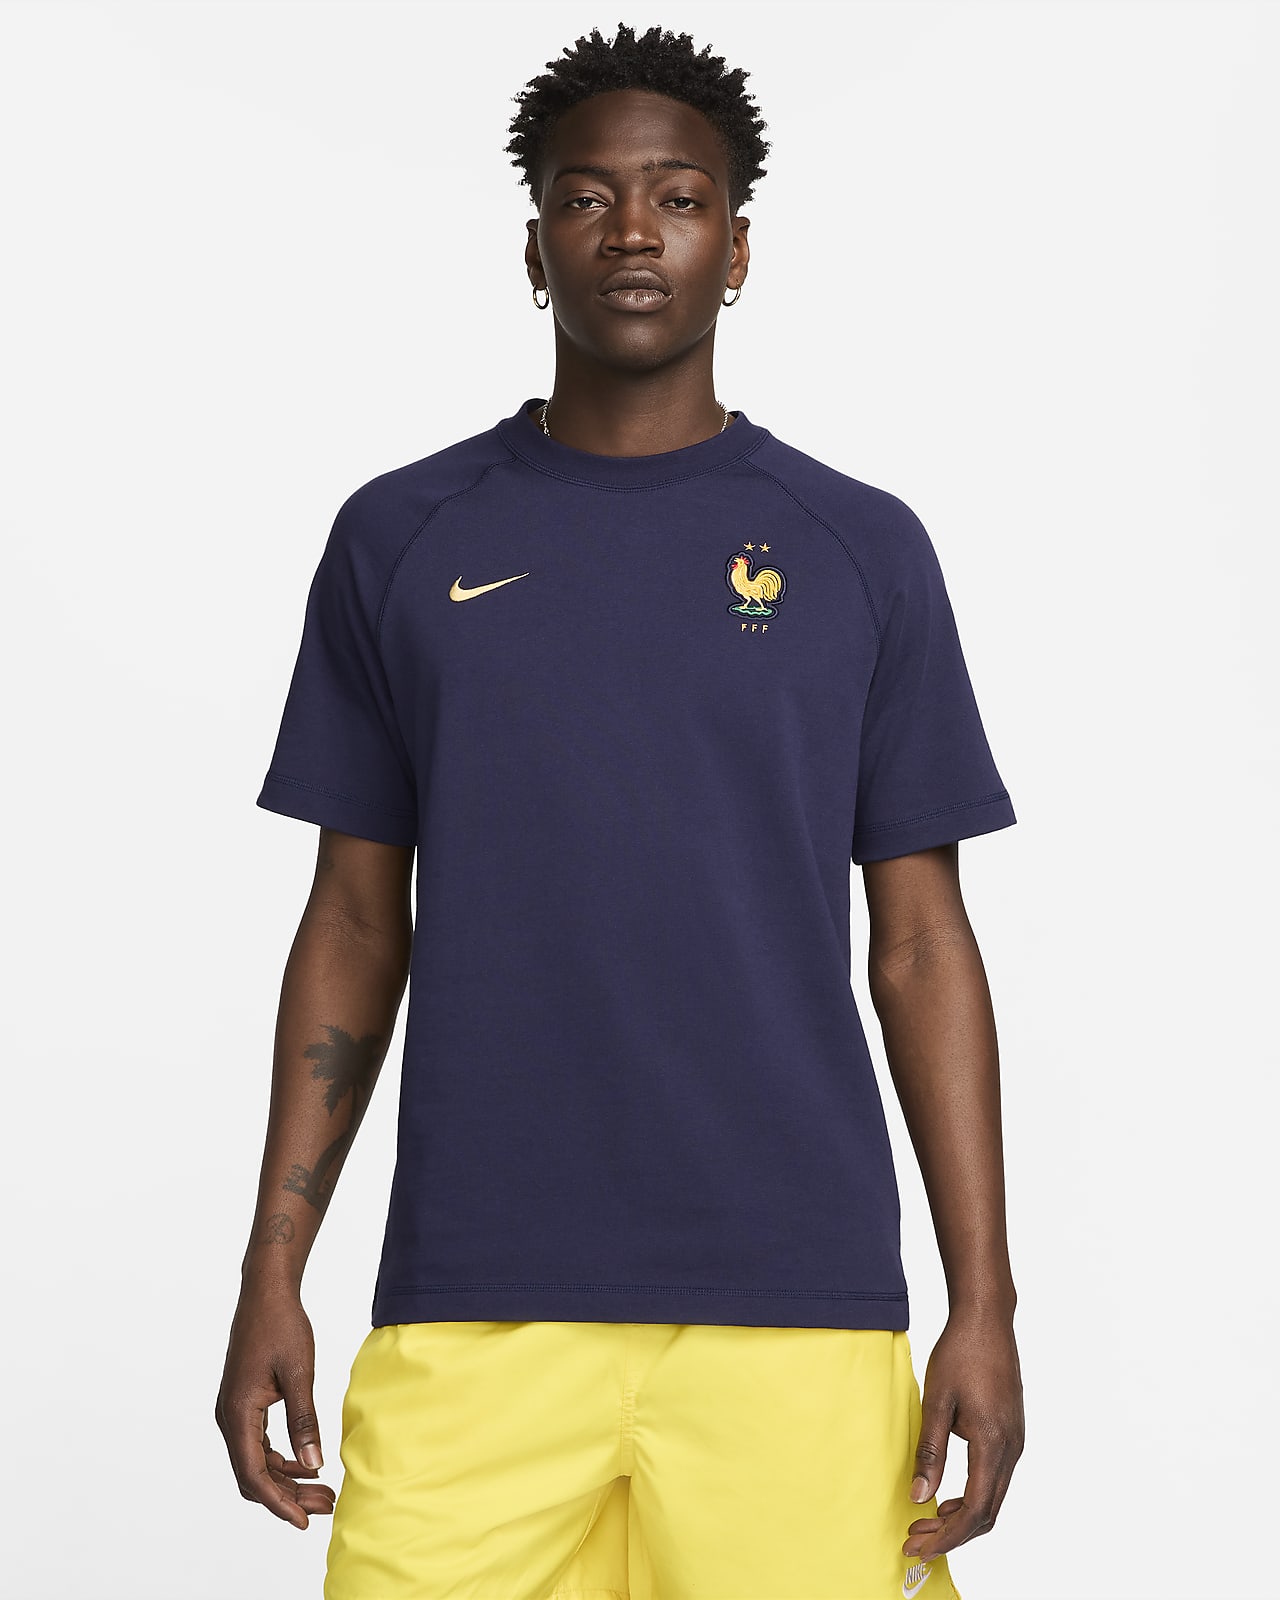 Cestovní tričko Nike Football FFF s krátkým rukávem